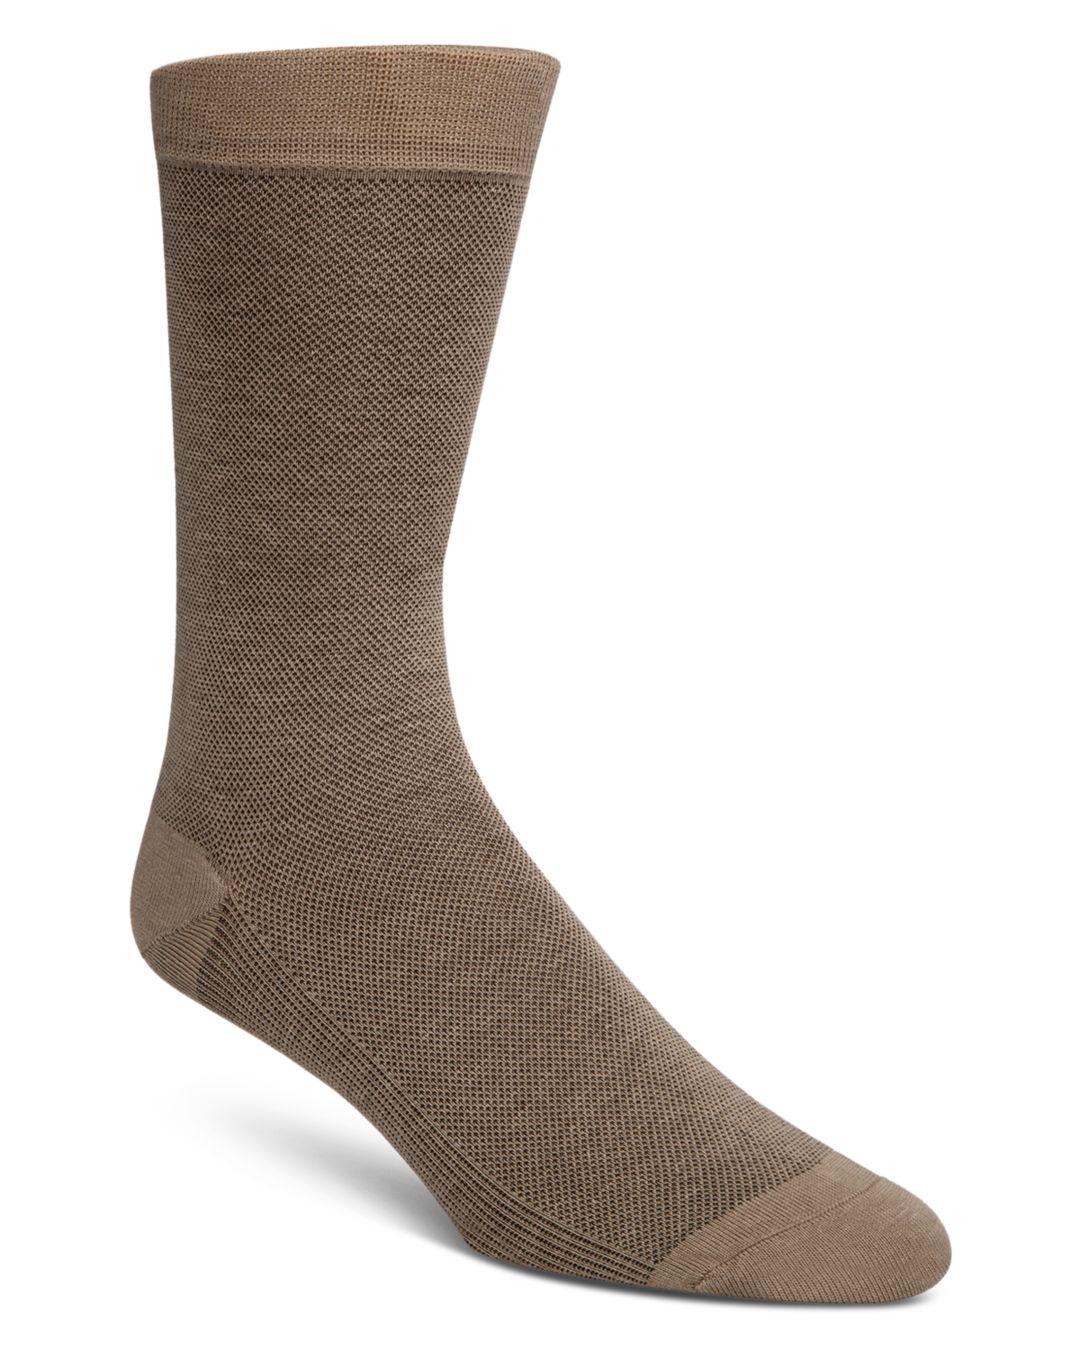 Cole Haan Piqué Textured Dress Socks for Men - Lyst